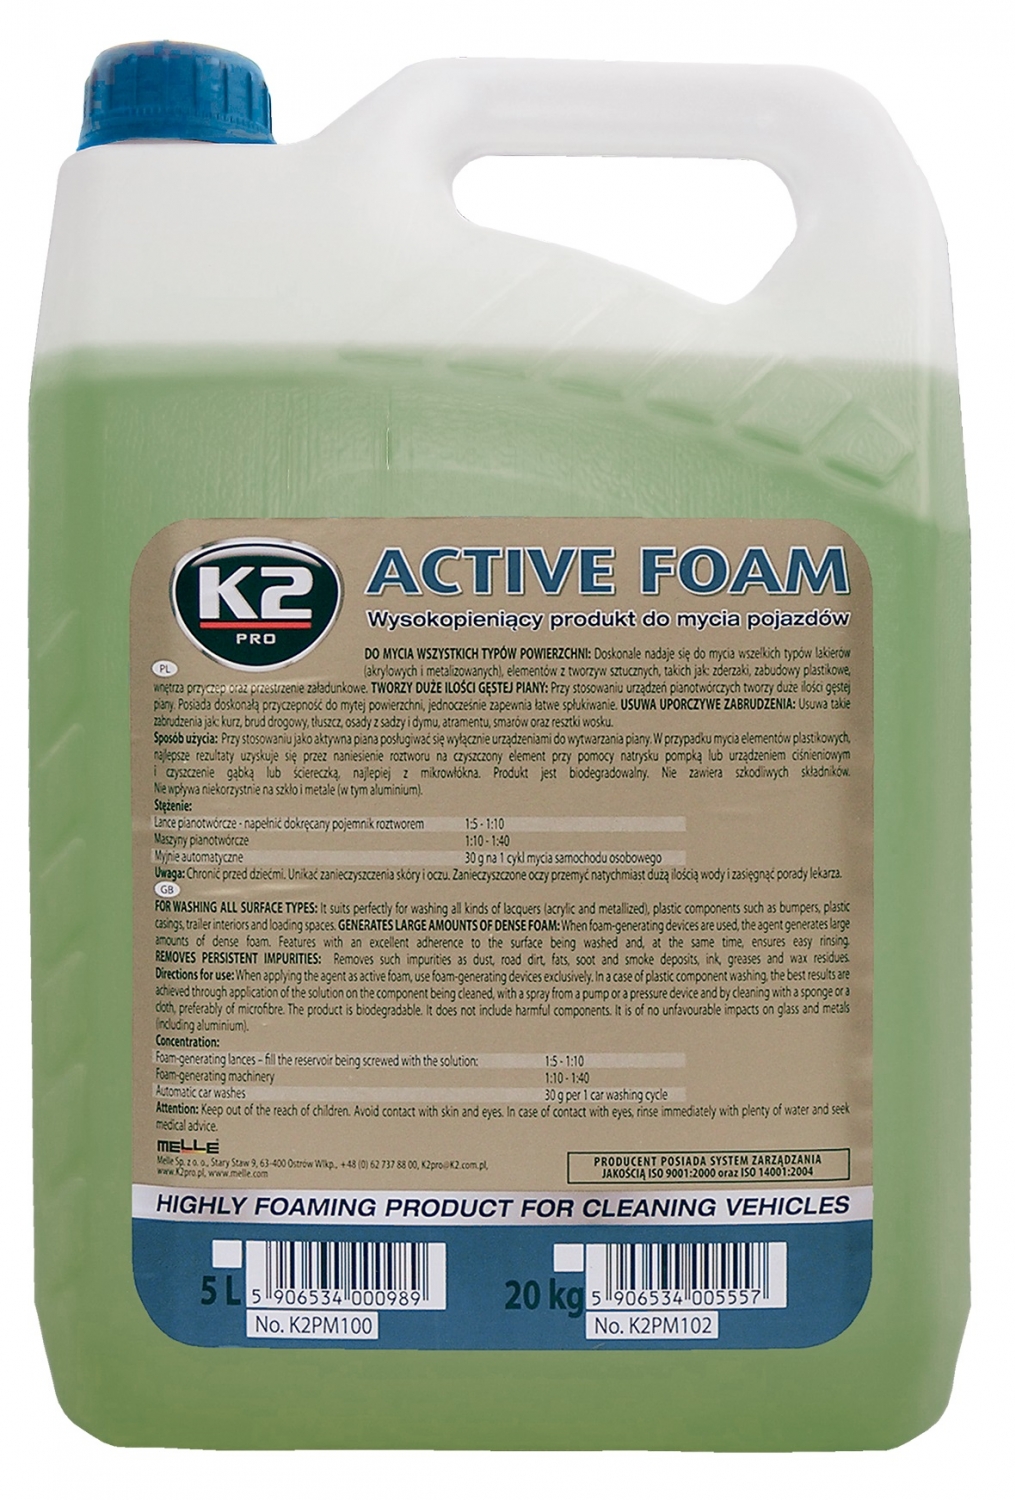 13210-k2-active-foam-5-kg